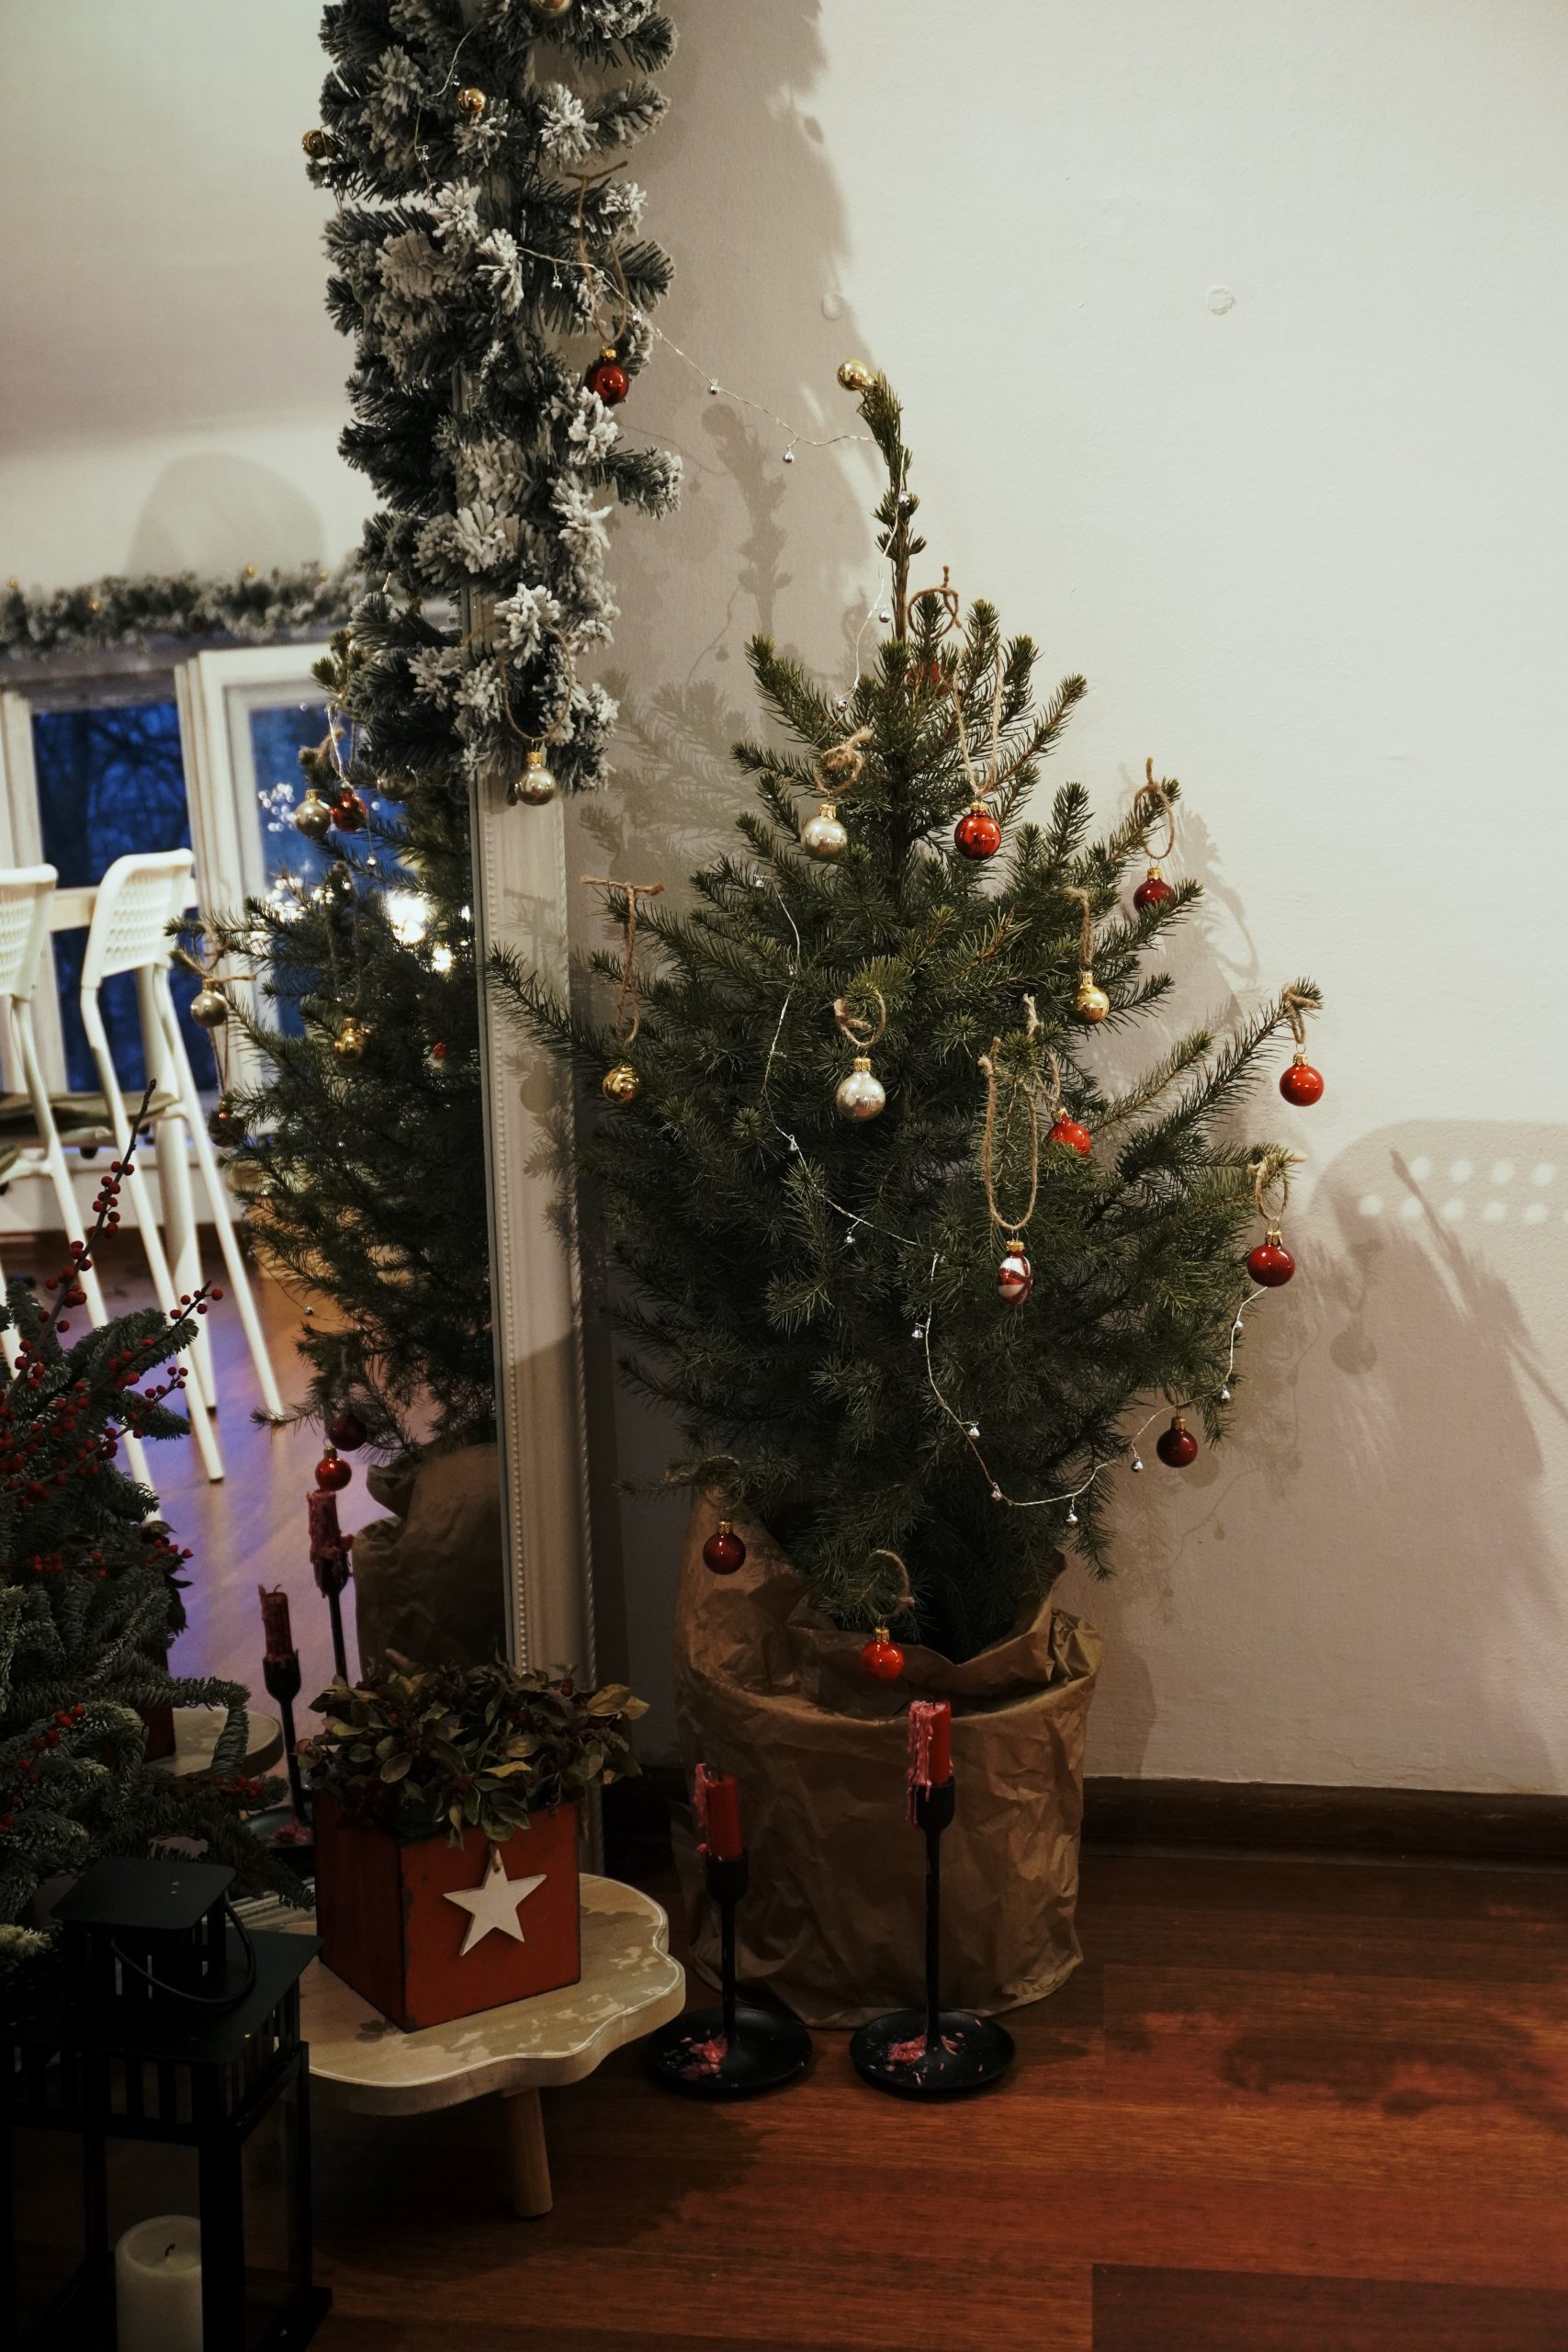 When should Christmas décor come down?